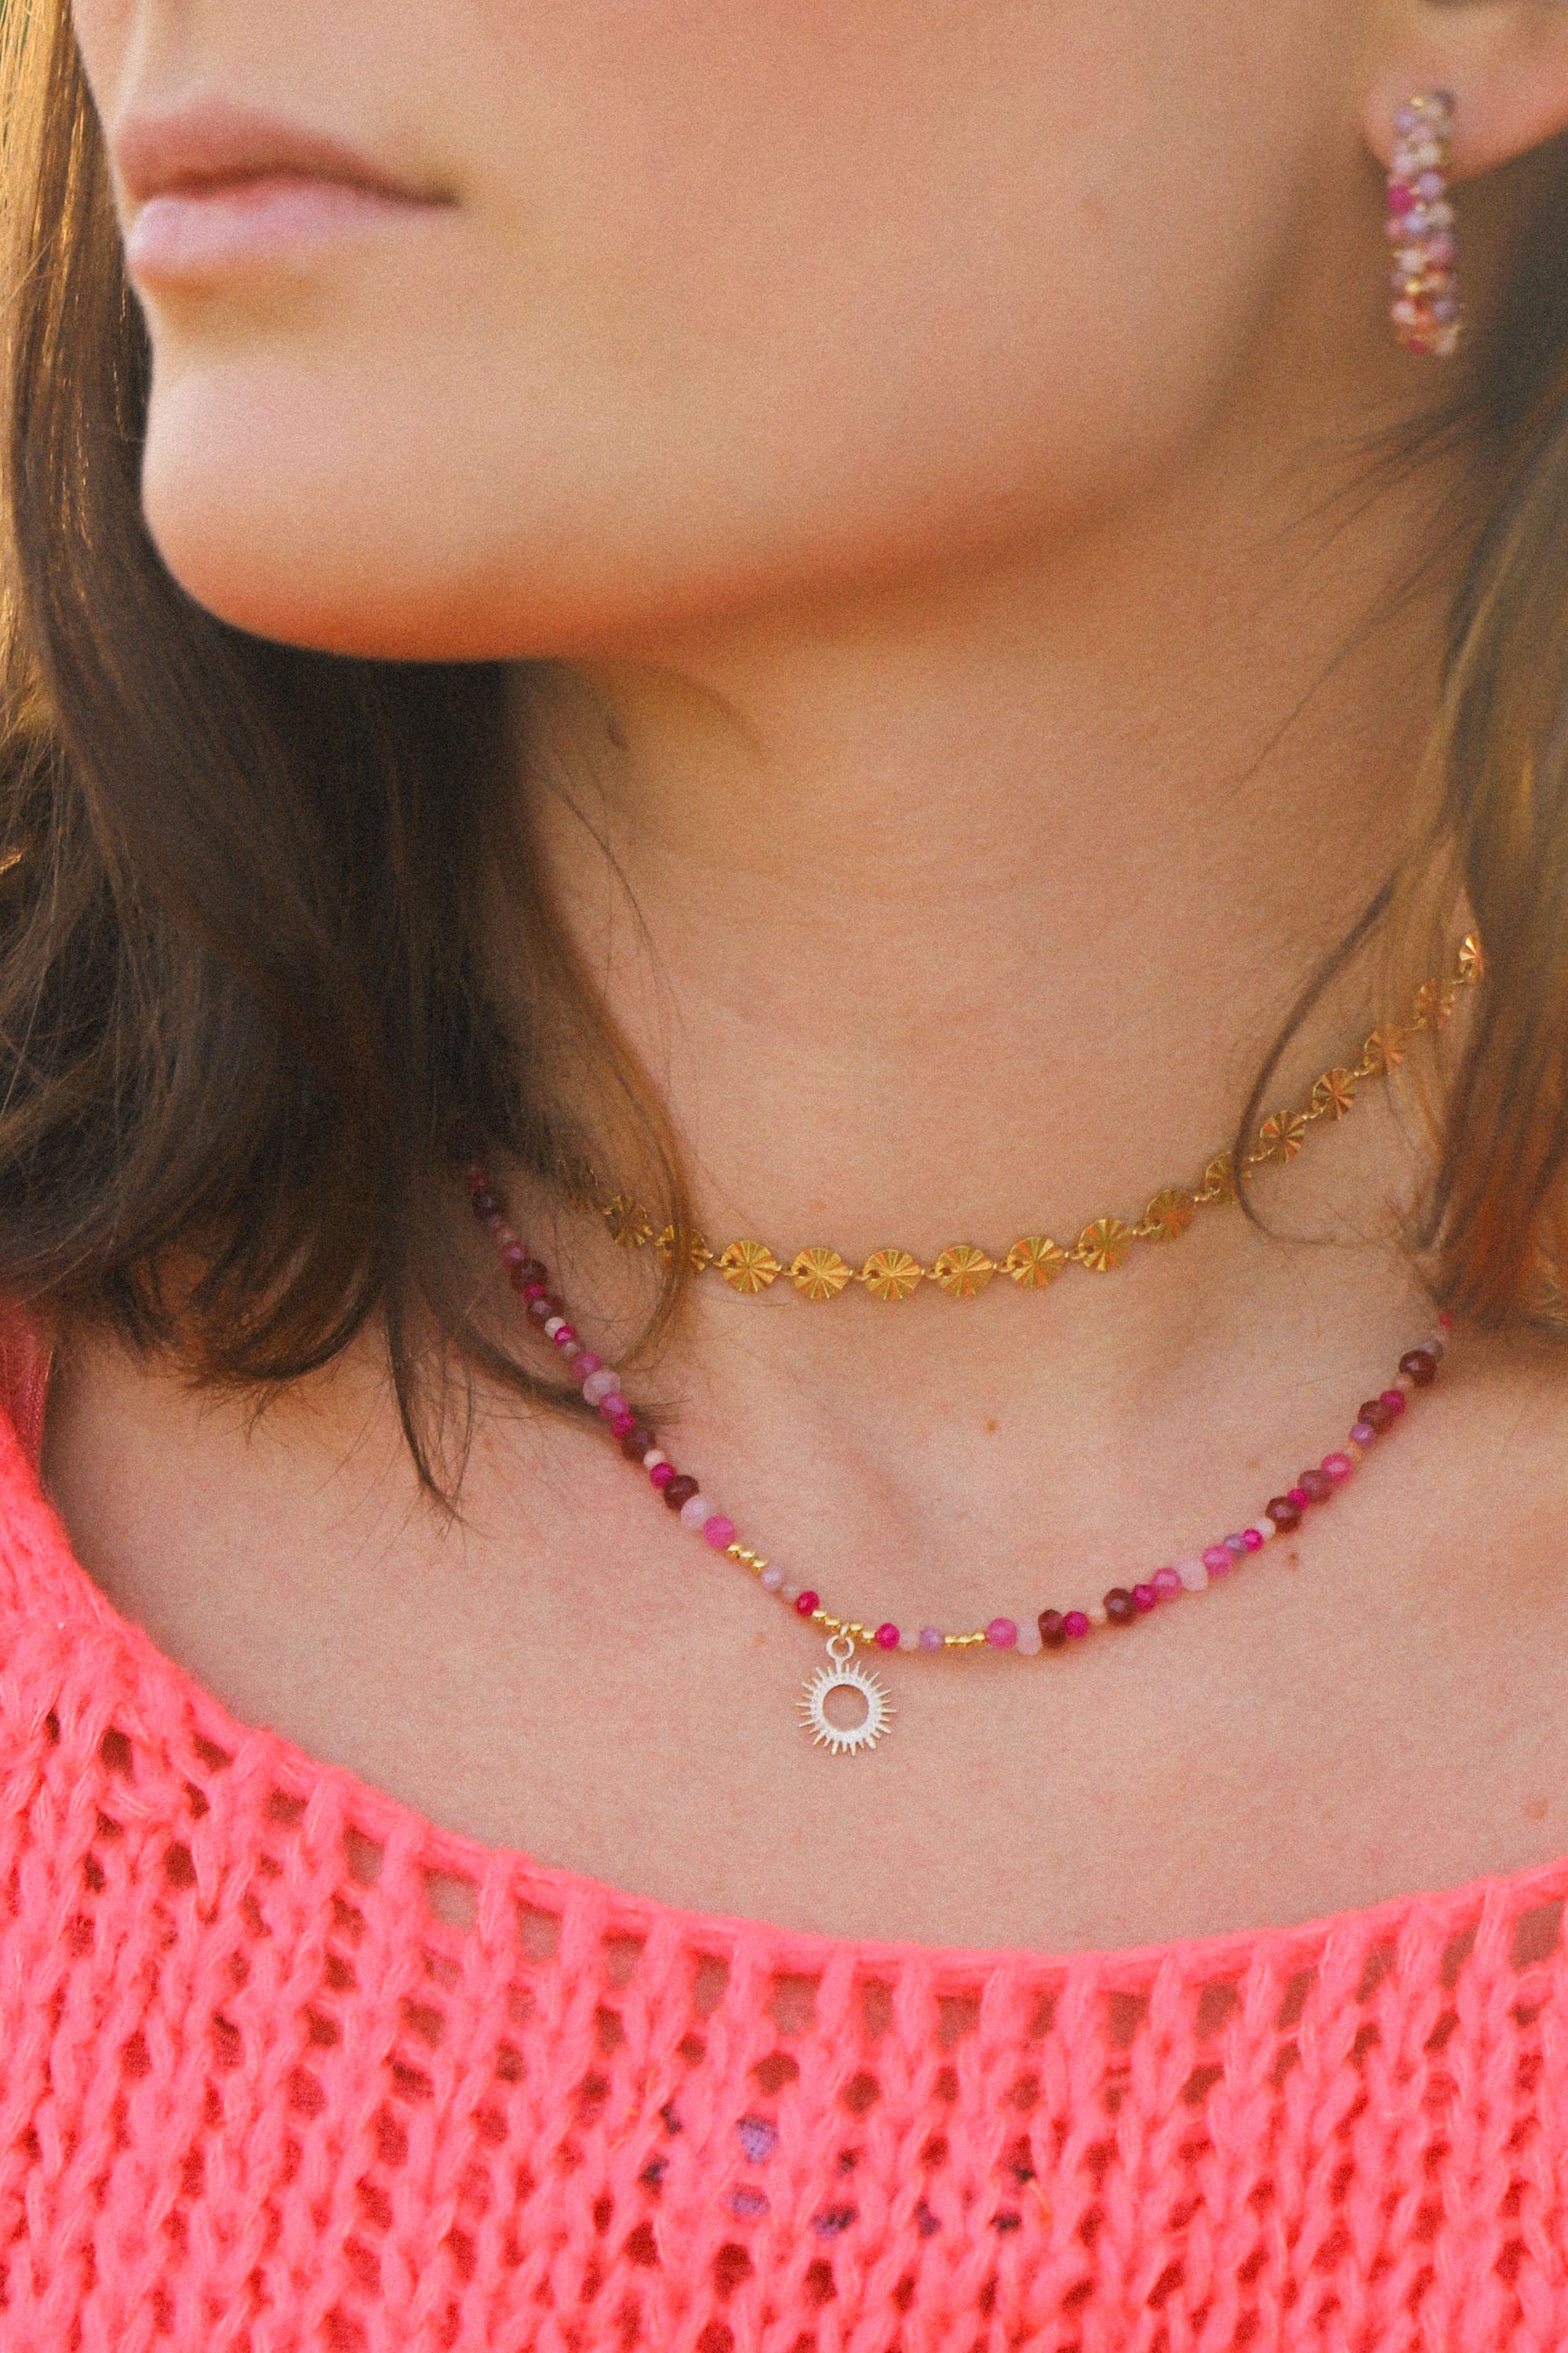 Collier Jane, ici porté, composé de perles roses et d'un petit soleil au centre.